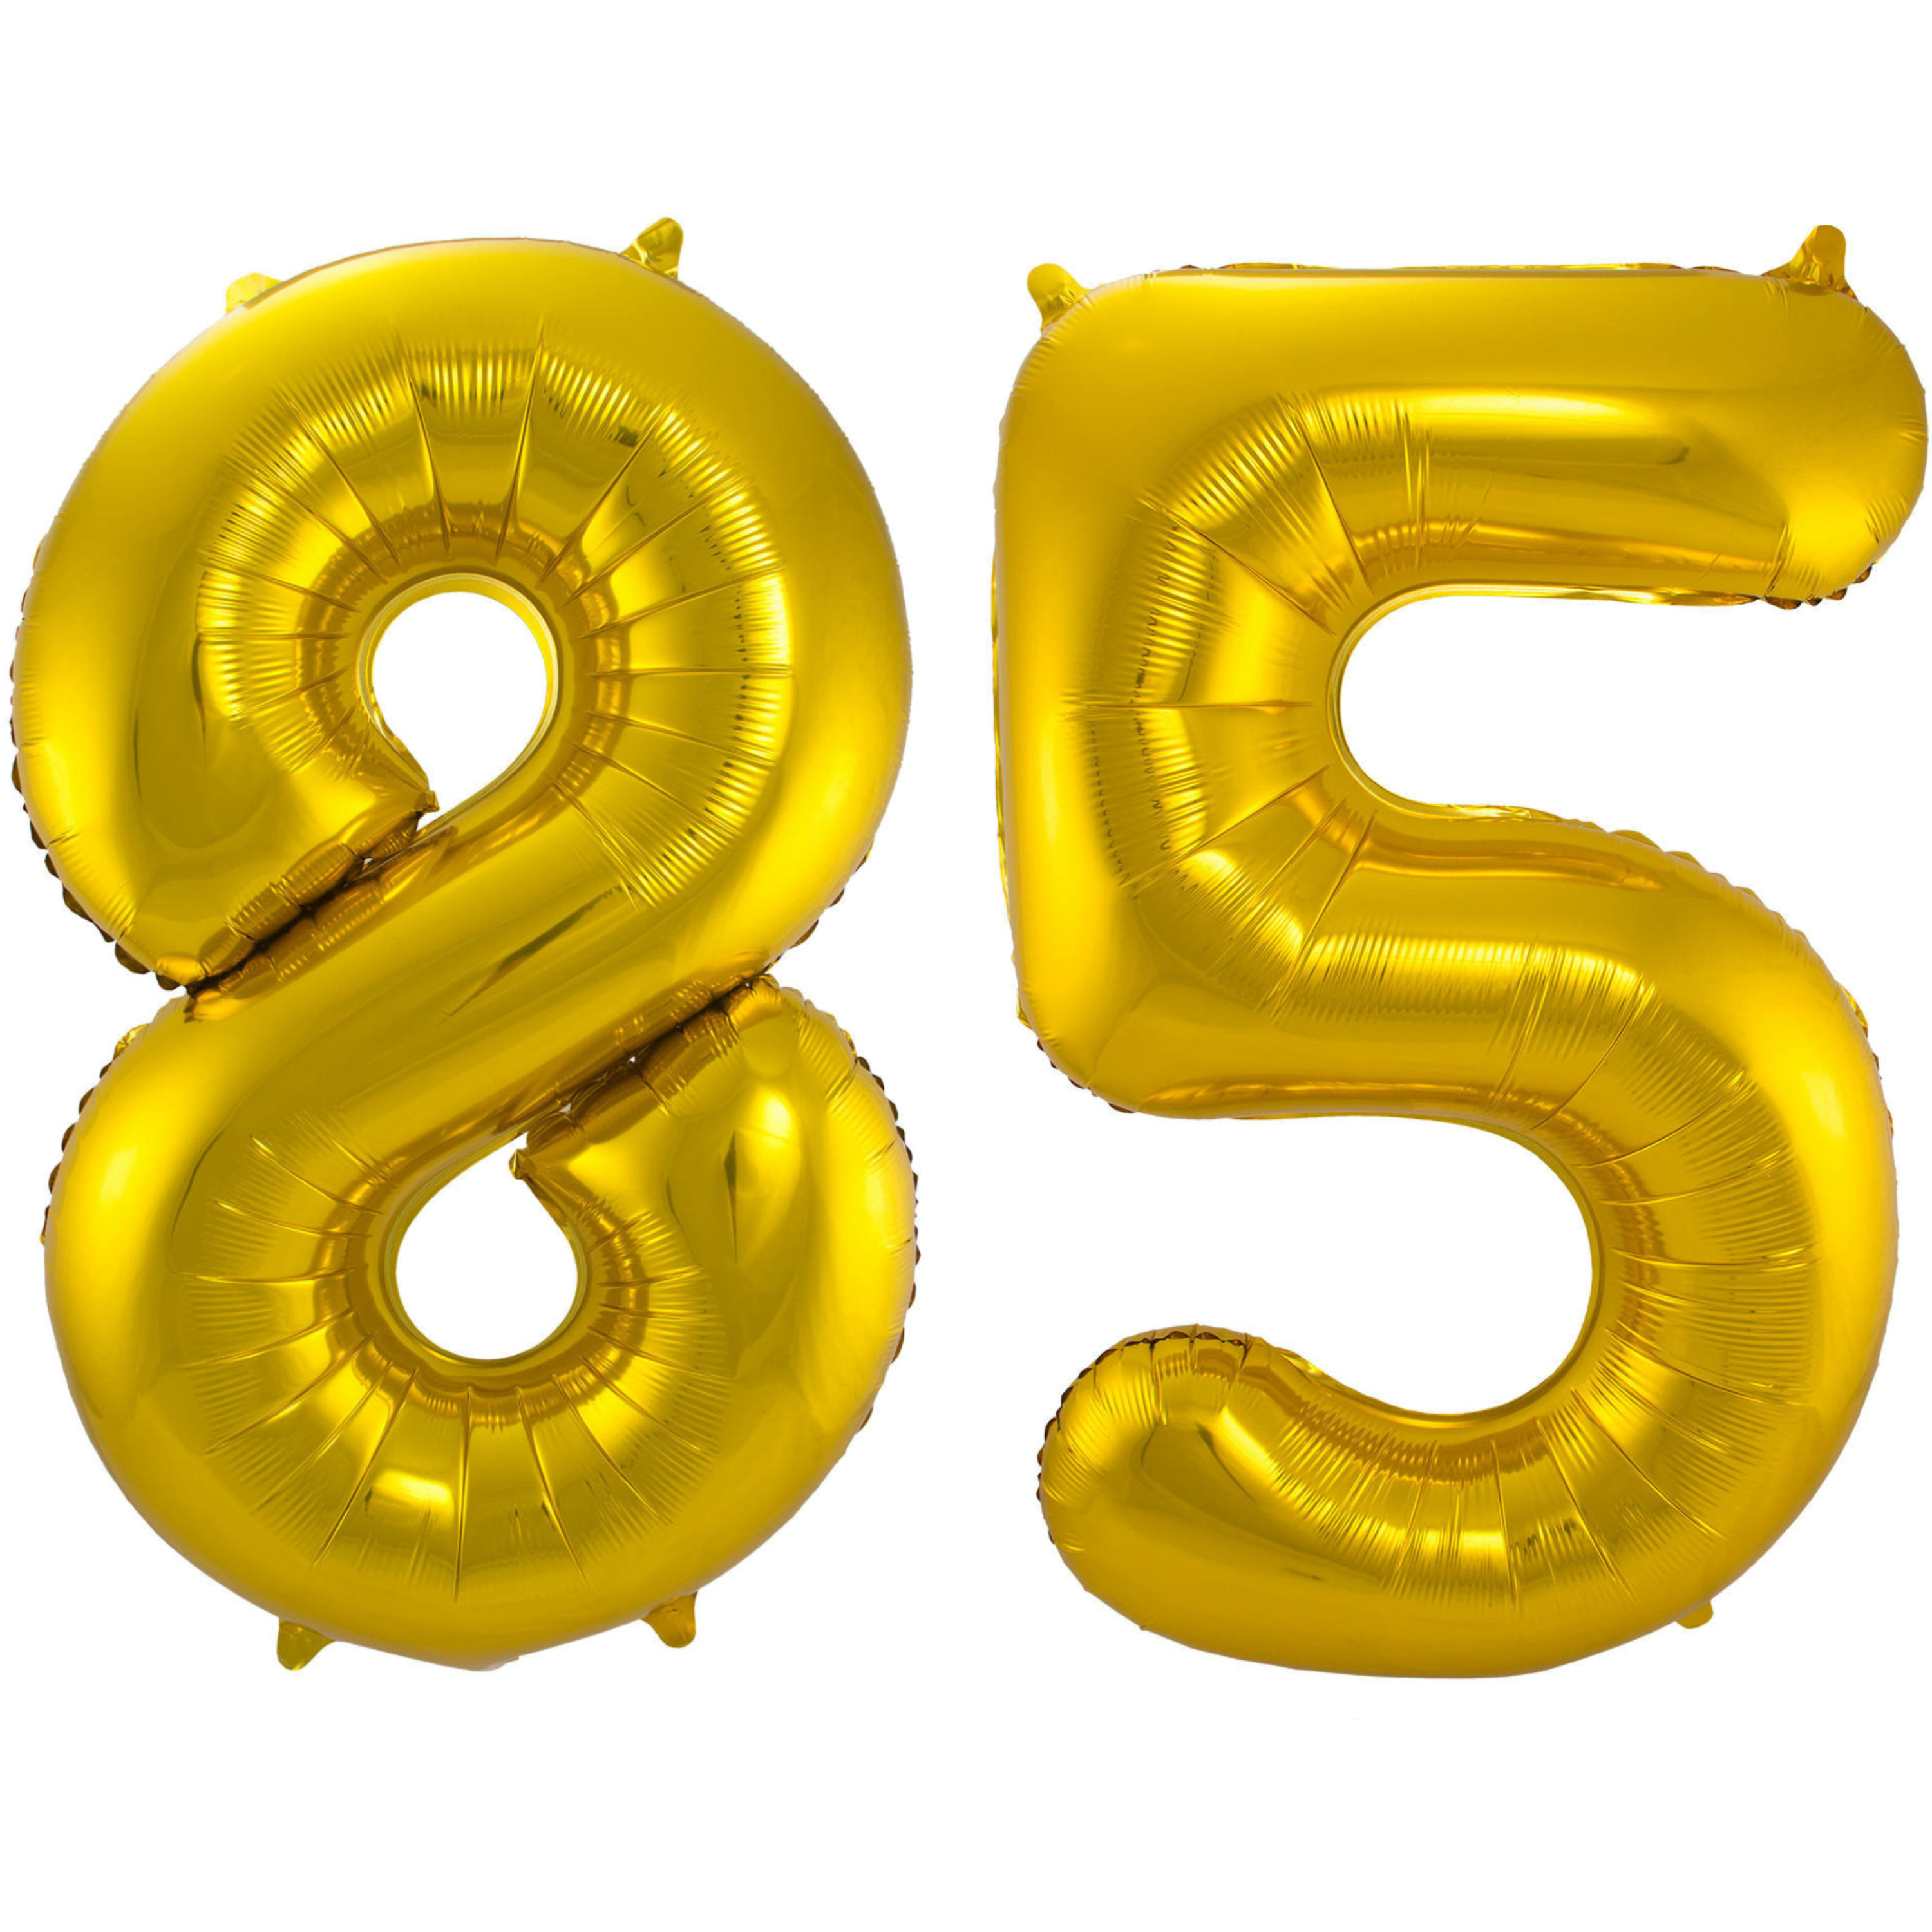 Leeftijd feestartikelen/versiering grote folie ballonnen 85 jaar goud 86 cm -